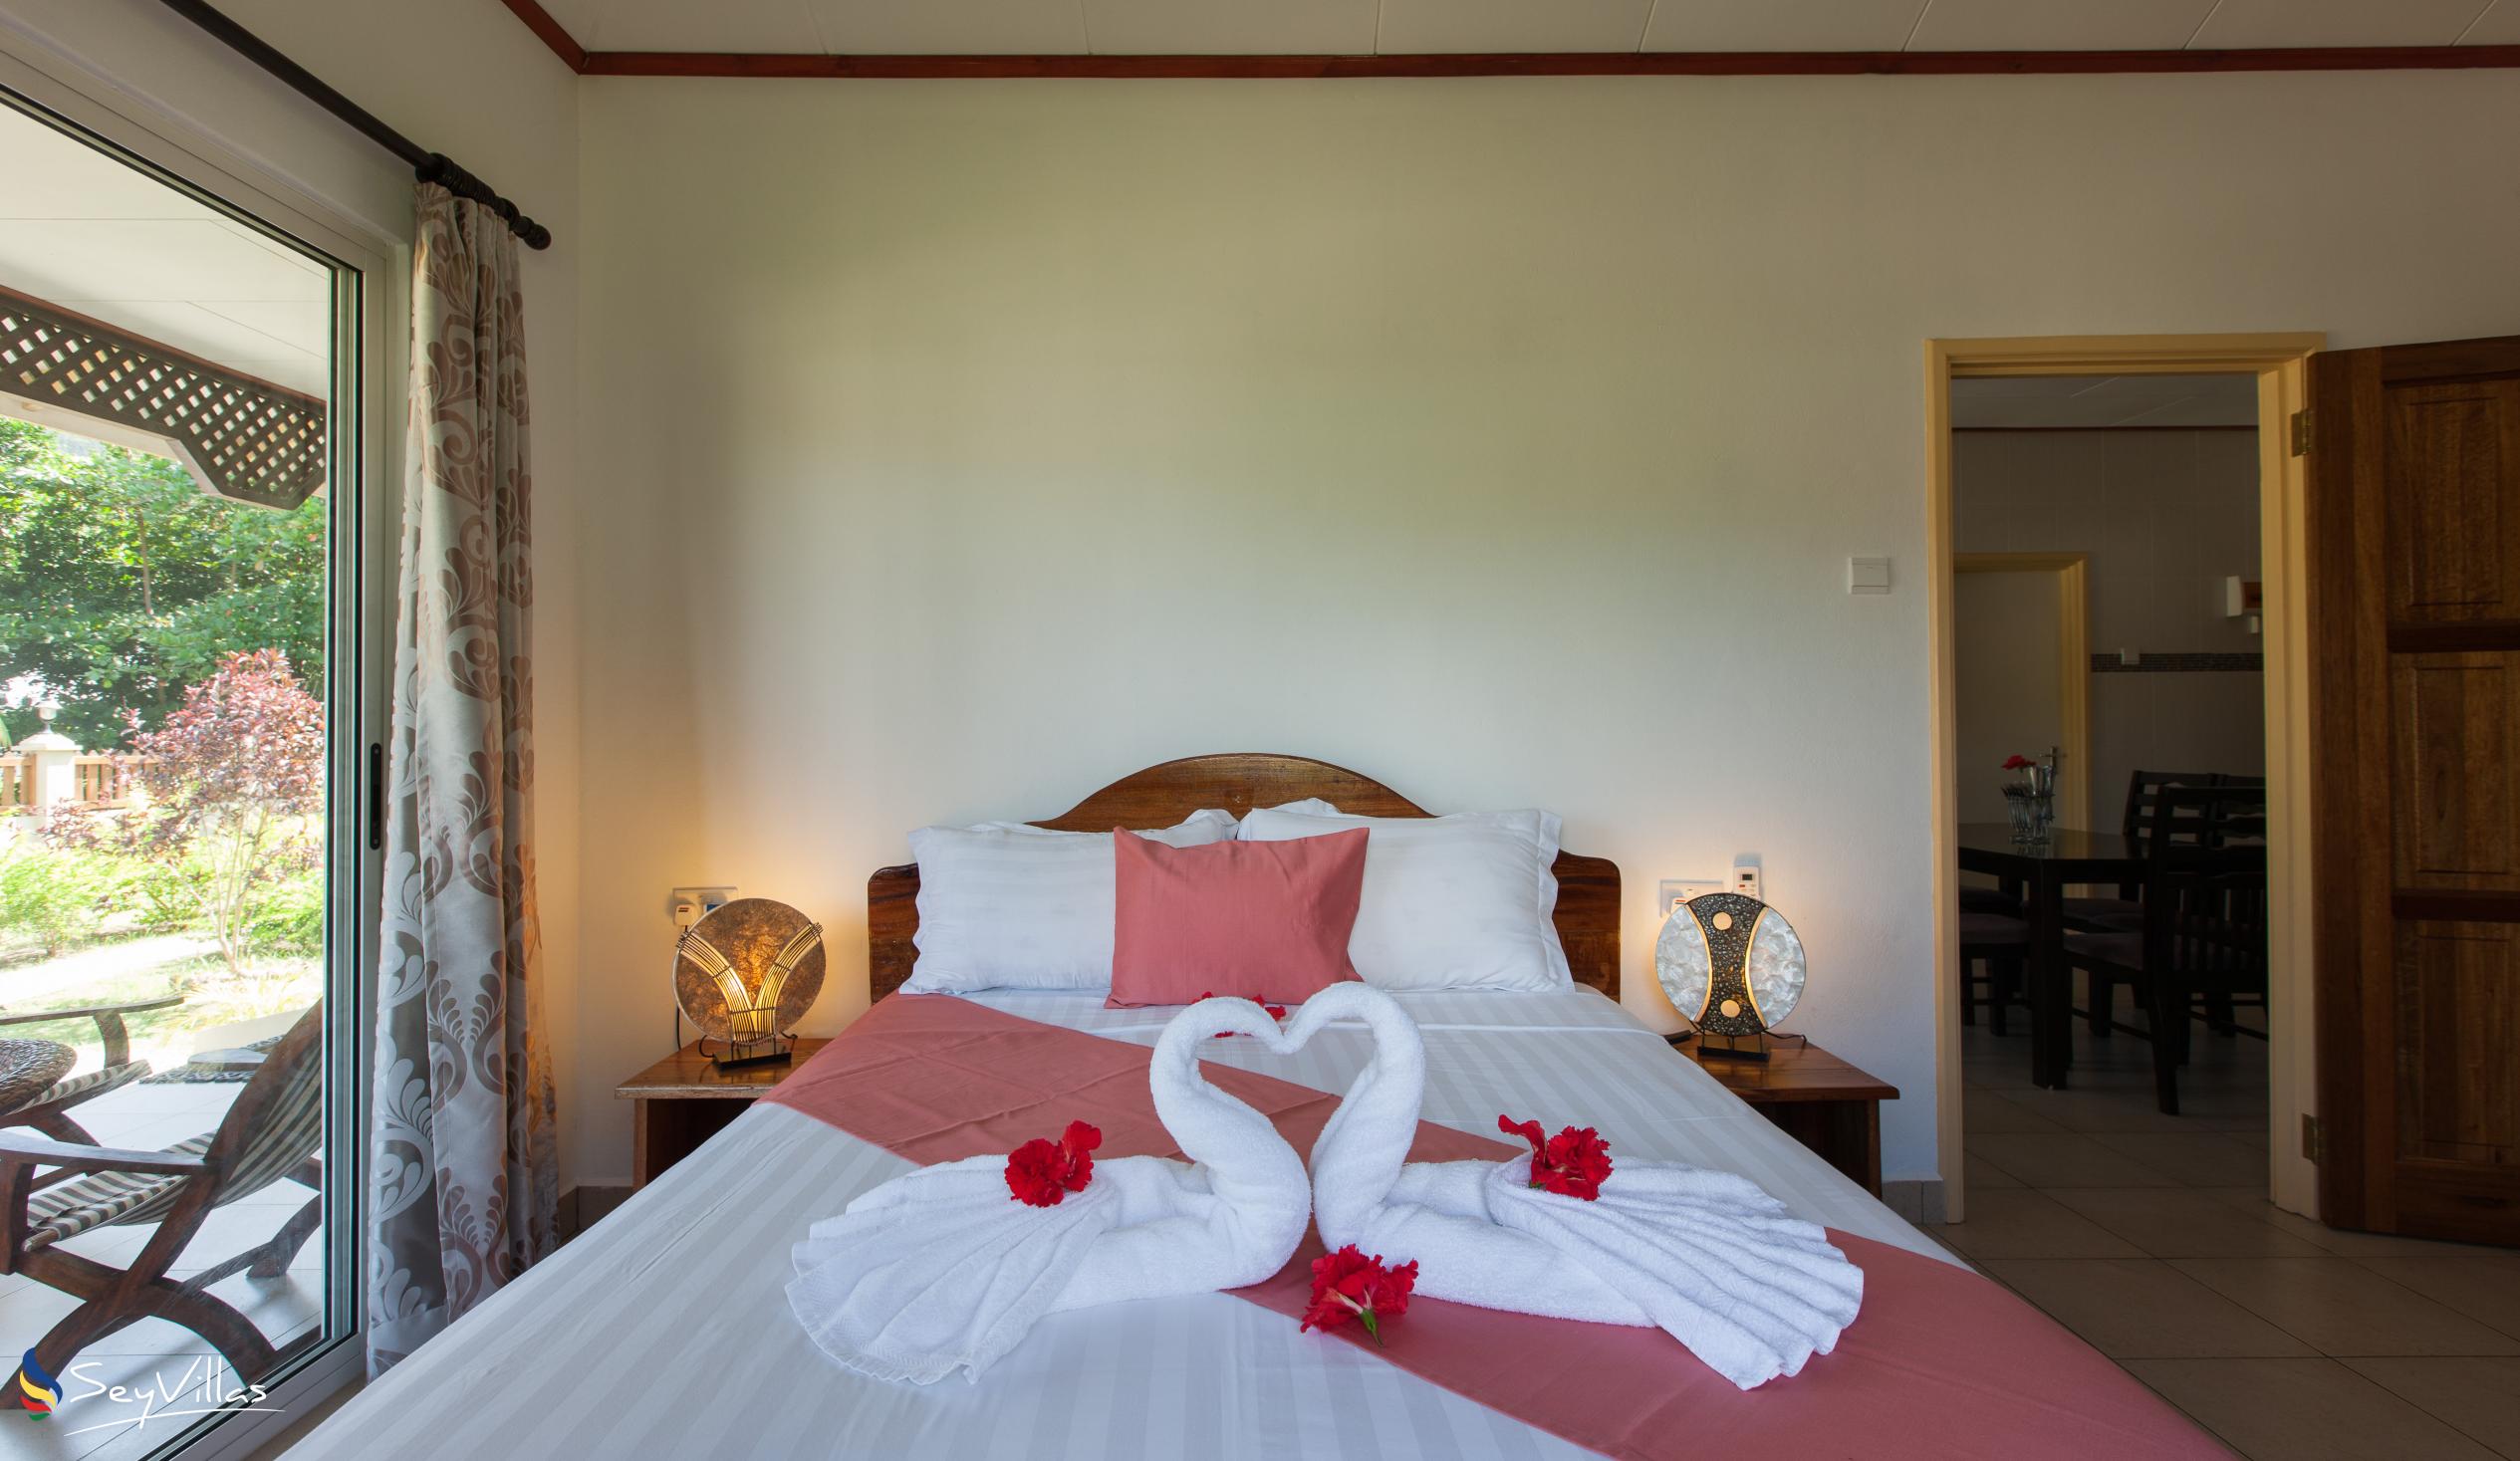 Foto 58: Hostellerie La Digue - Bungalow con 2 camere da letto - La Digue (Seychelles)